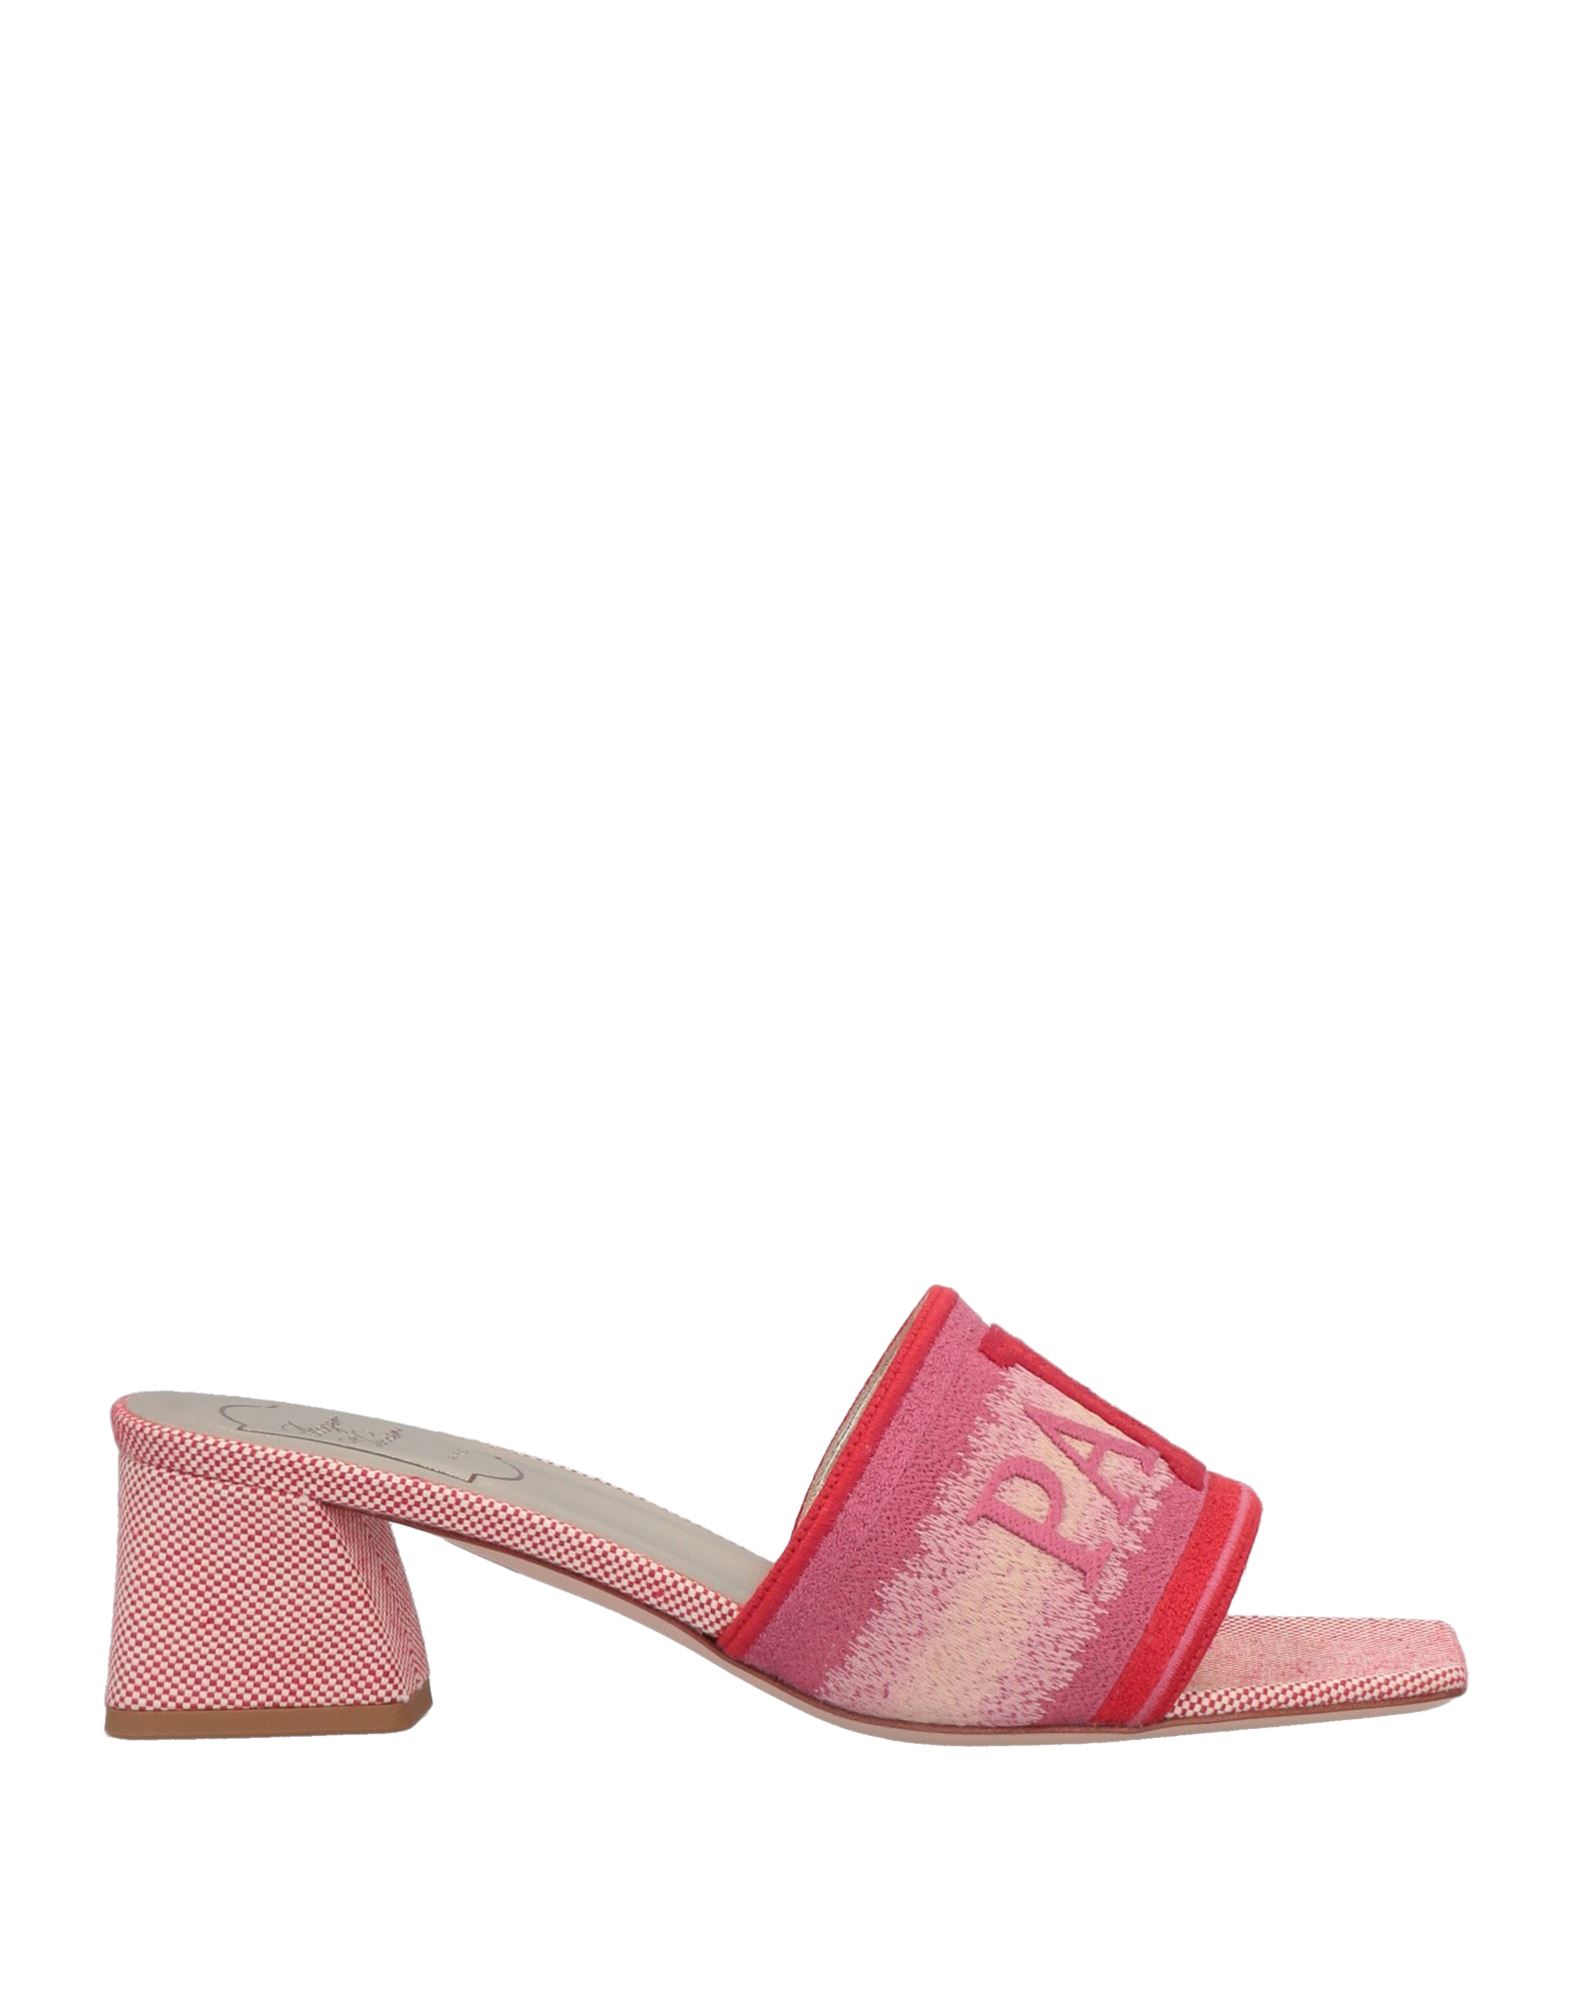 Roger Vivier Sandals In Pink